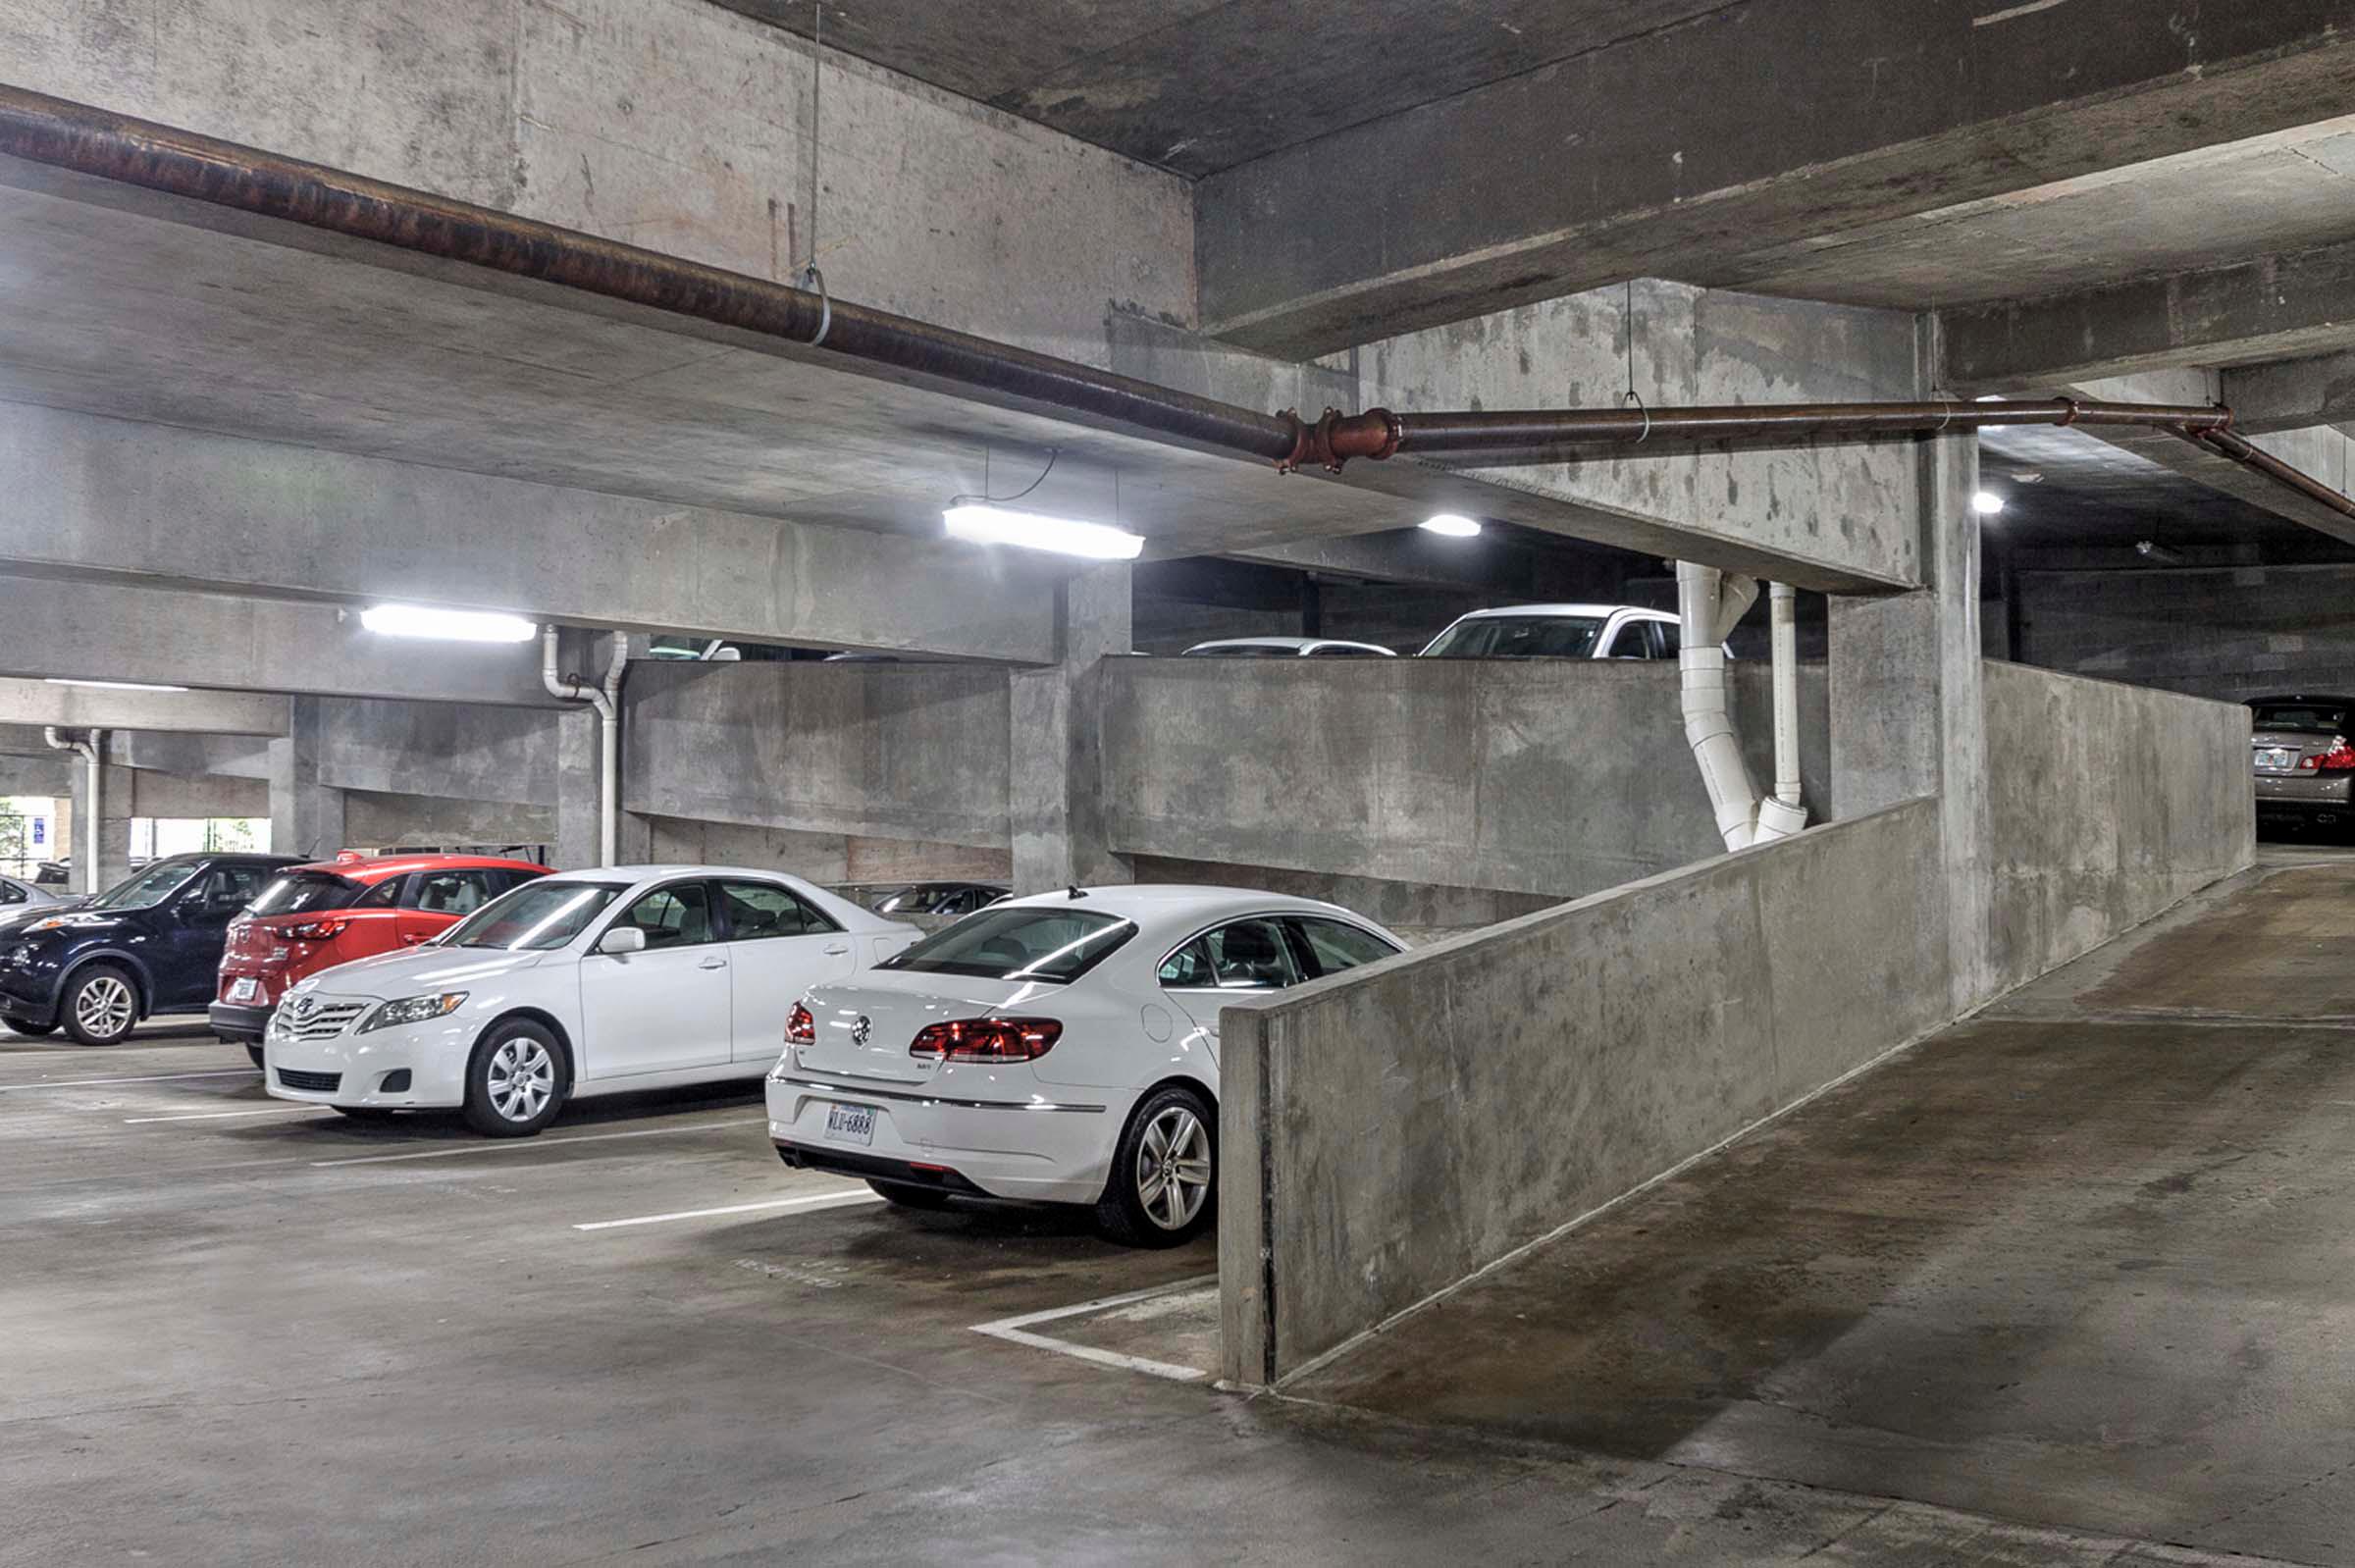 Parking garage interior